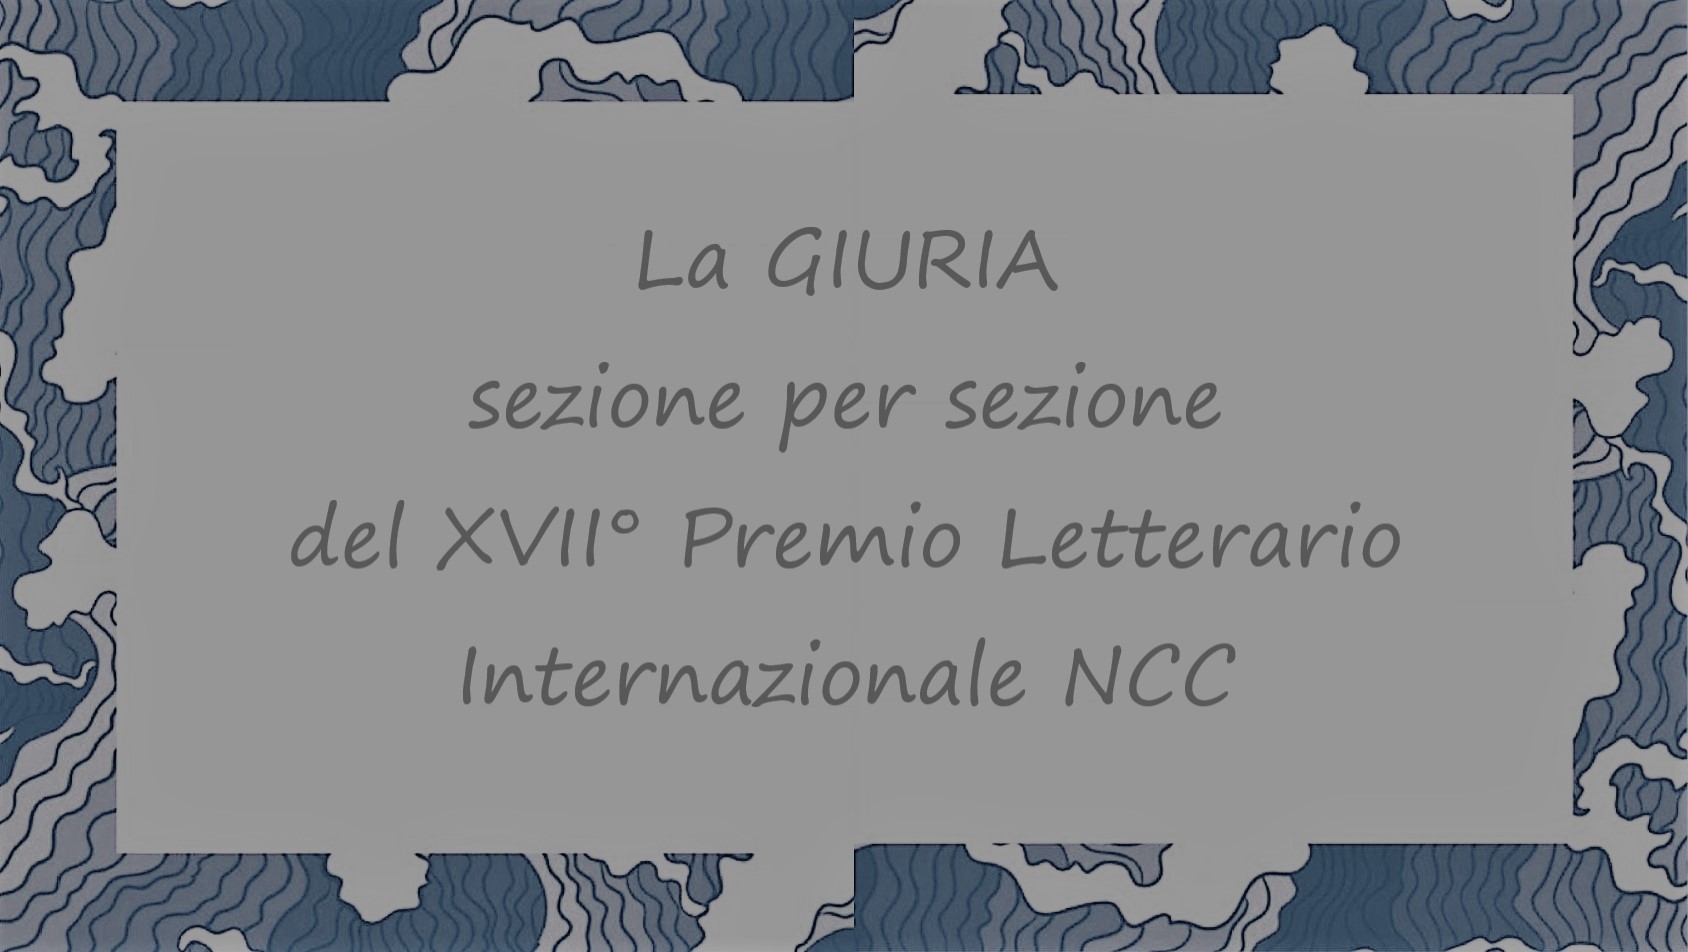 La GIURIA del XVII° Premio Letterario Internazionale Napoli Cultural Classic